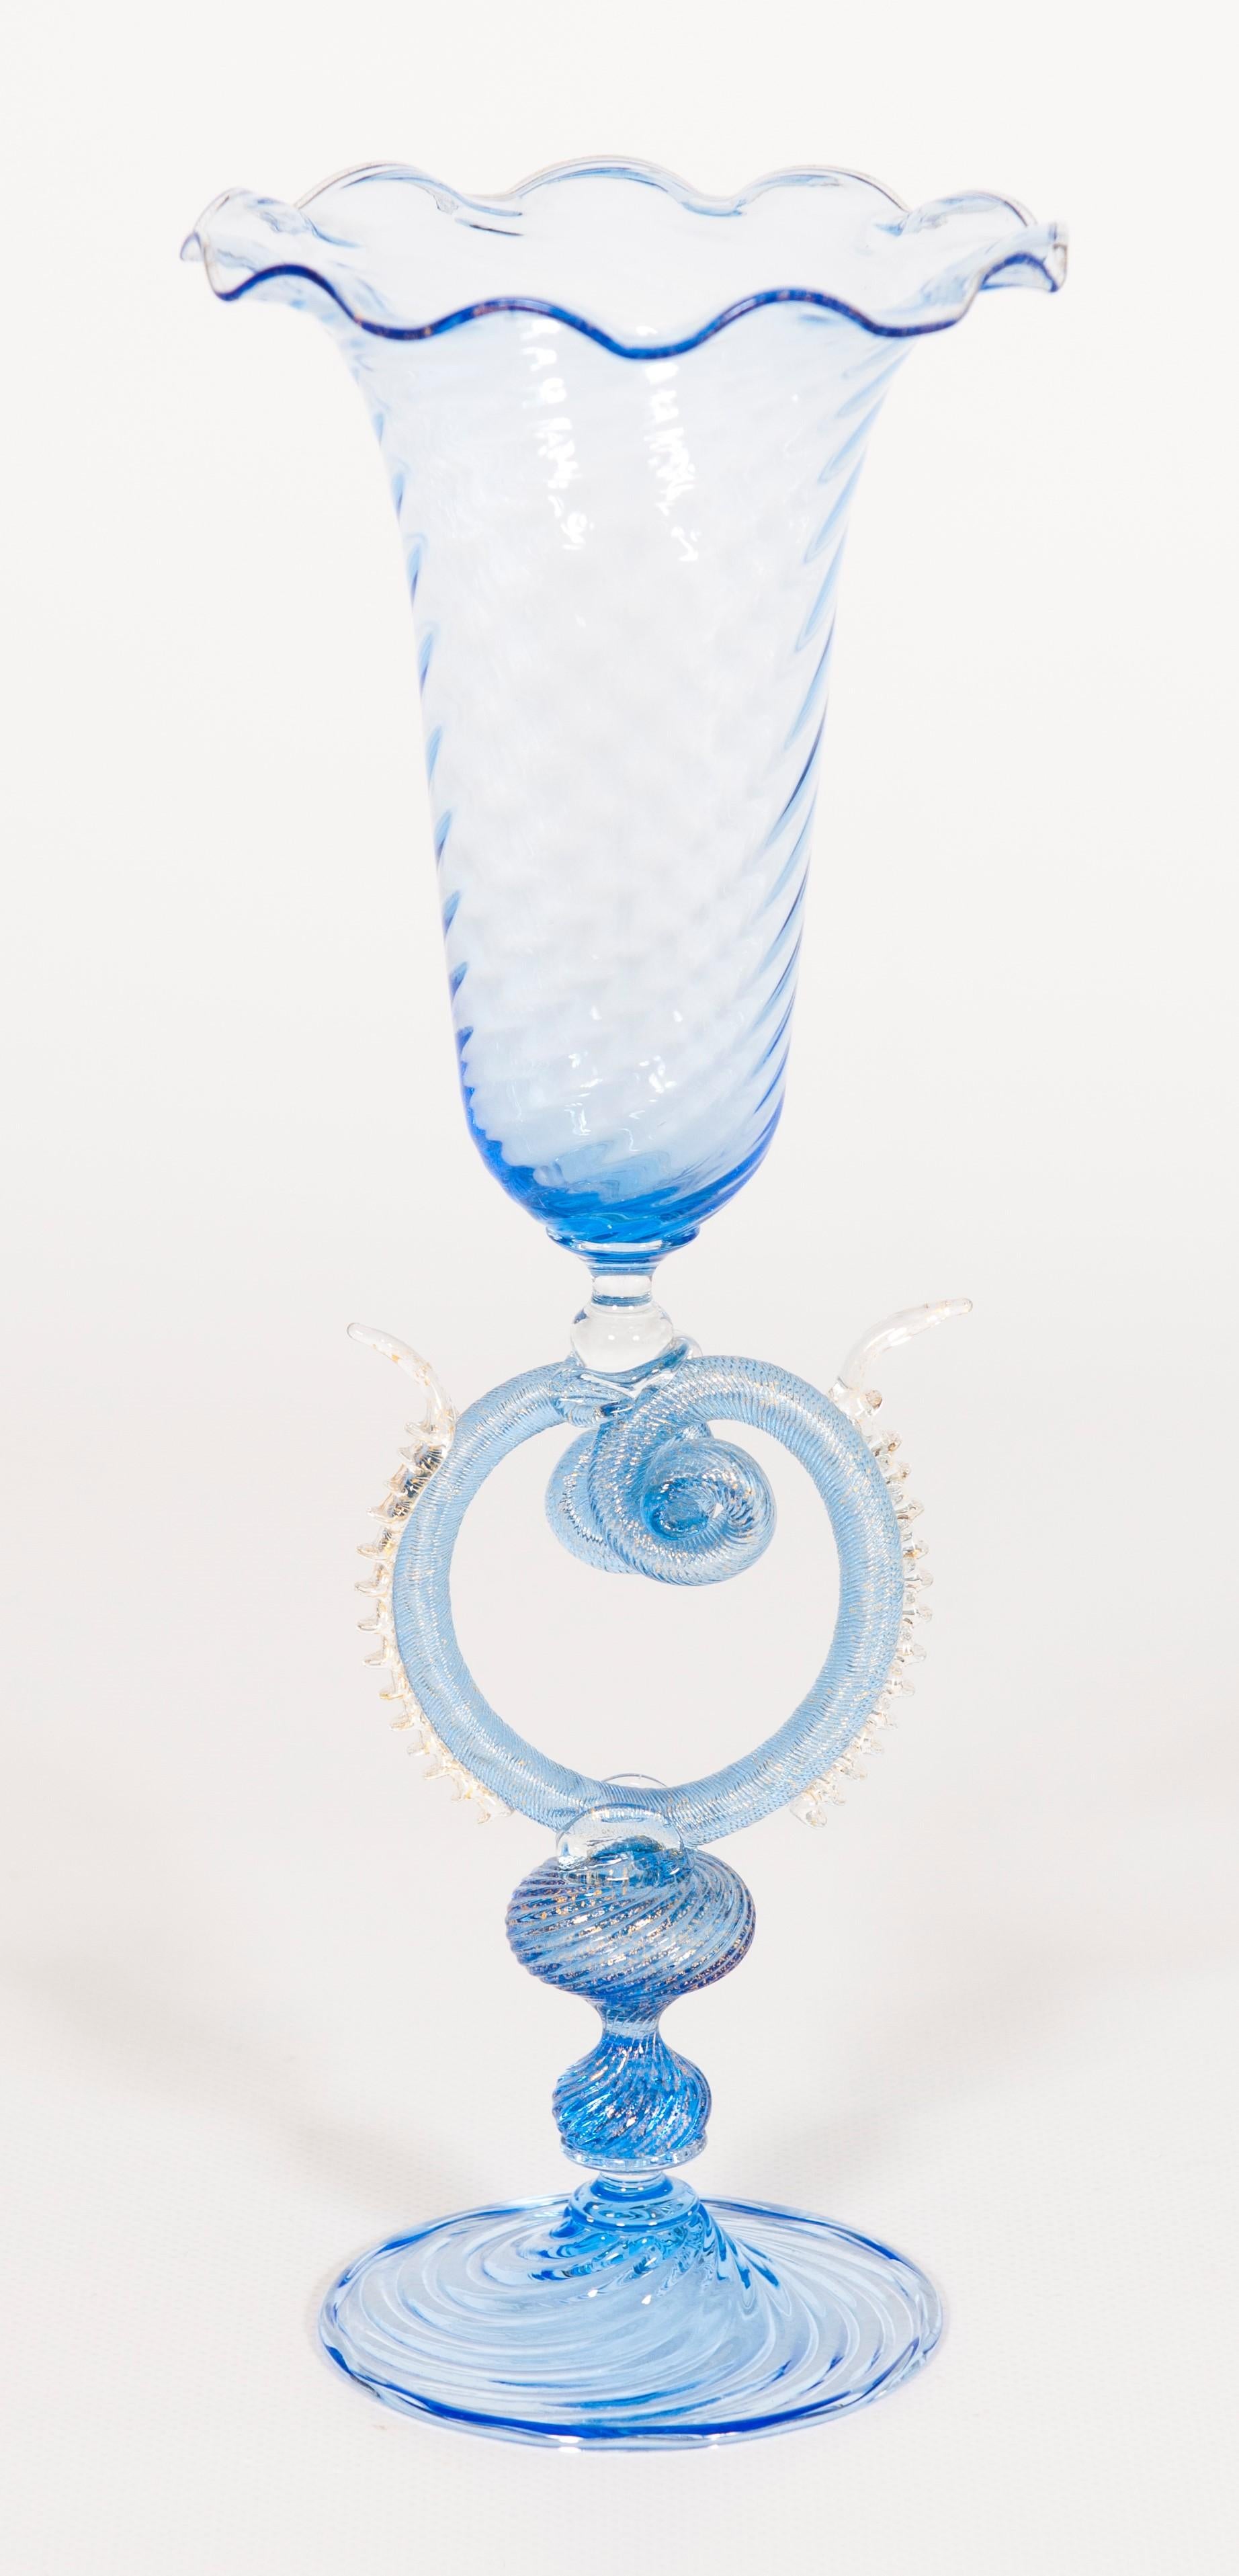 Calice bleu italien en verre de Murano et or 24 carats, années 1980.
Cet élégant calice vénitien a été entièrement fabriqué à la main avec du verre soufflé de Murano, dans une belle couleur bleue et une forme particulière. La base et la tige